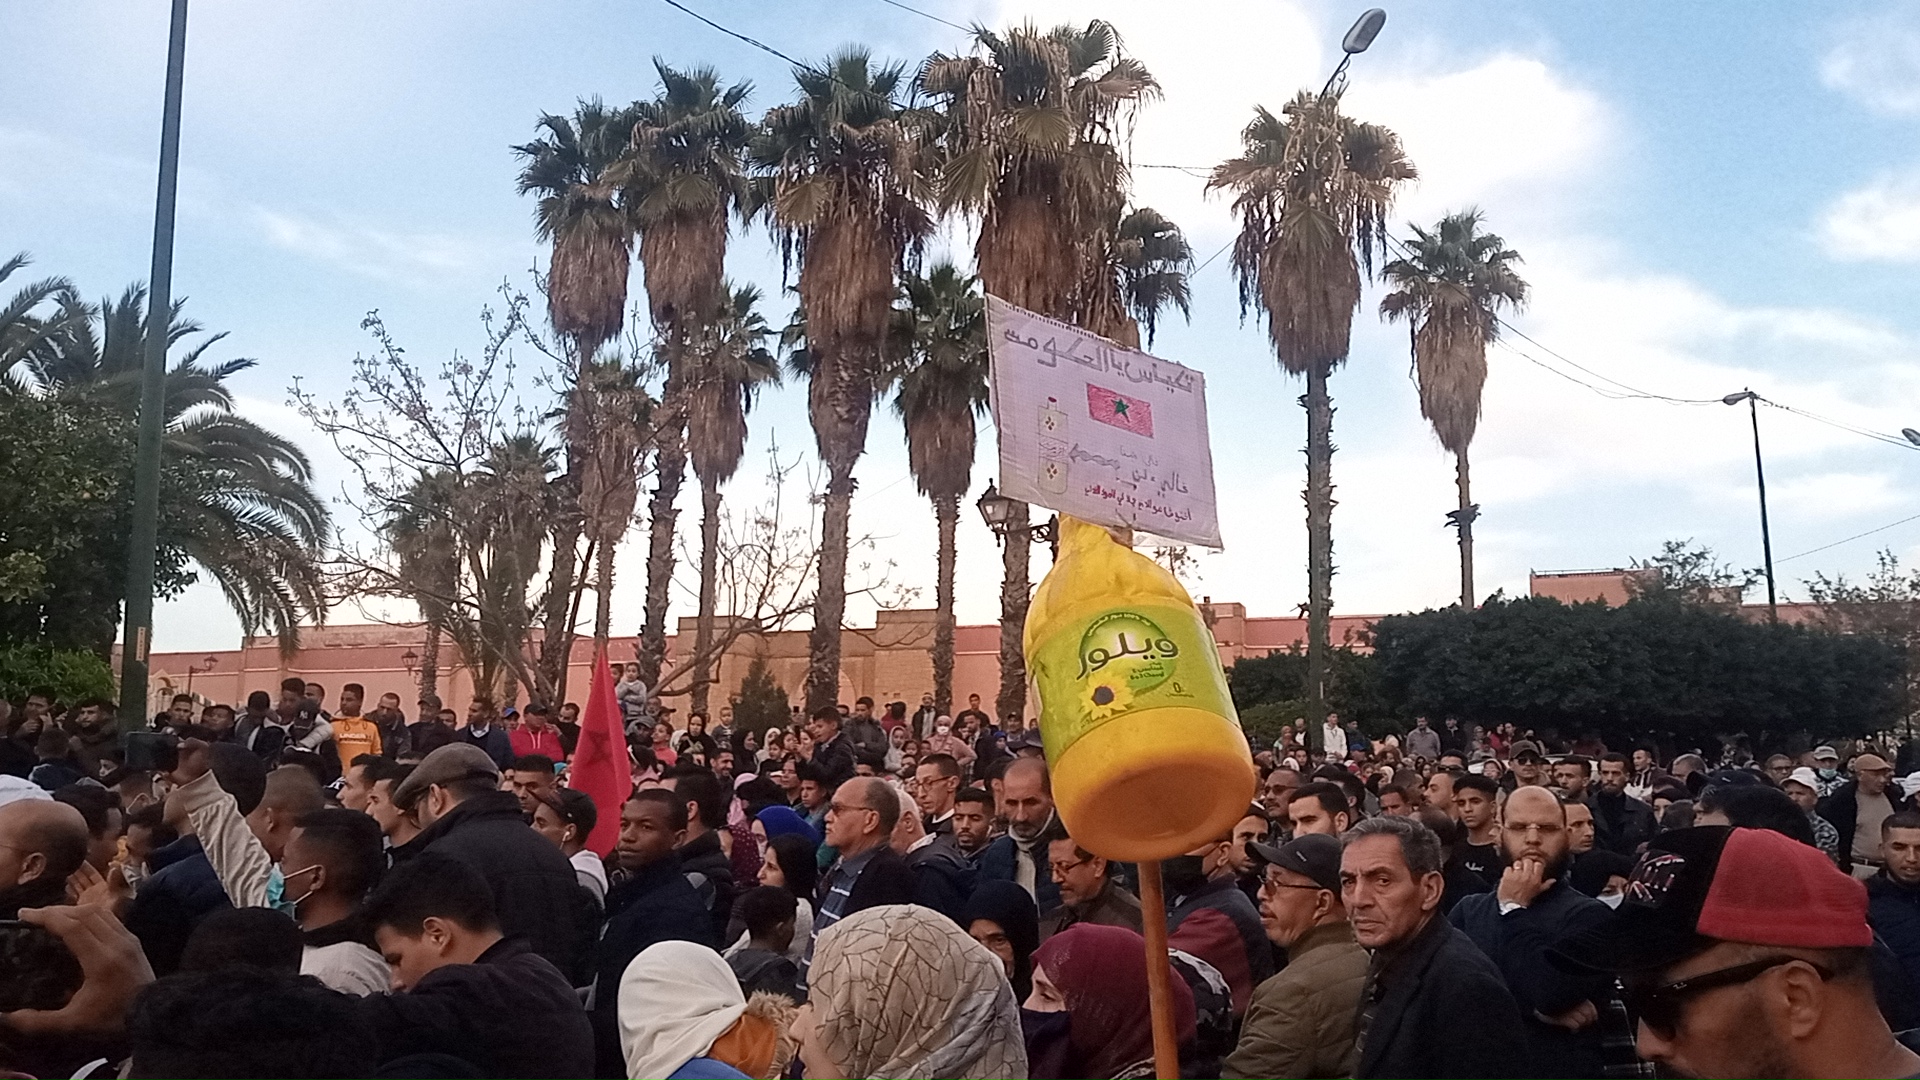 بعد الاحتجاجات… أخنوش وأغلبيته يُلطِّفون الأجواء ويصدرون بلاغا يعلنون فيه دعمهم للمغاربة ضد غلاء الأسعار !(بلاغ)